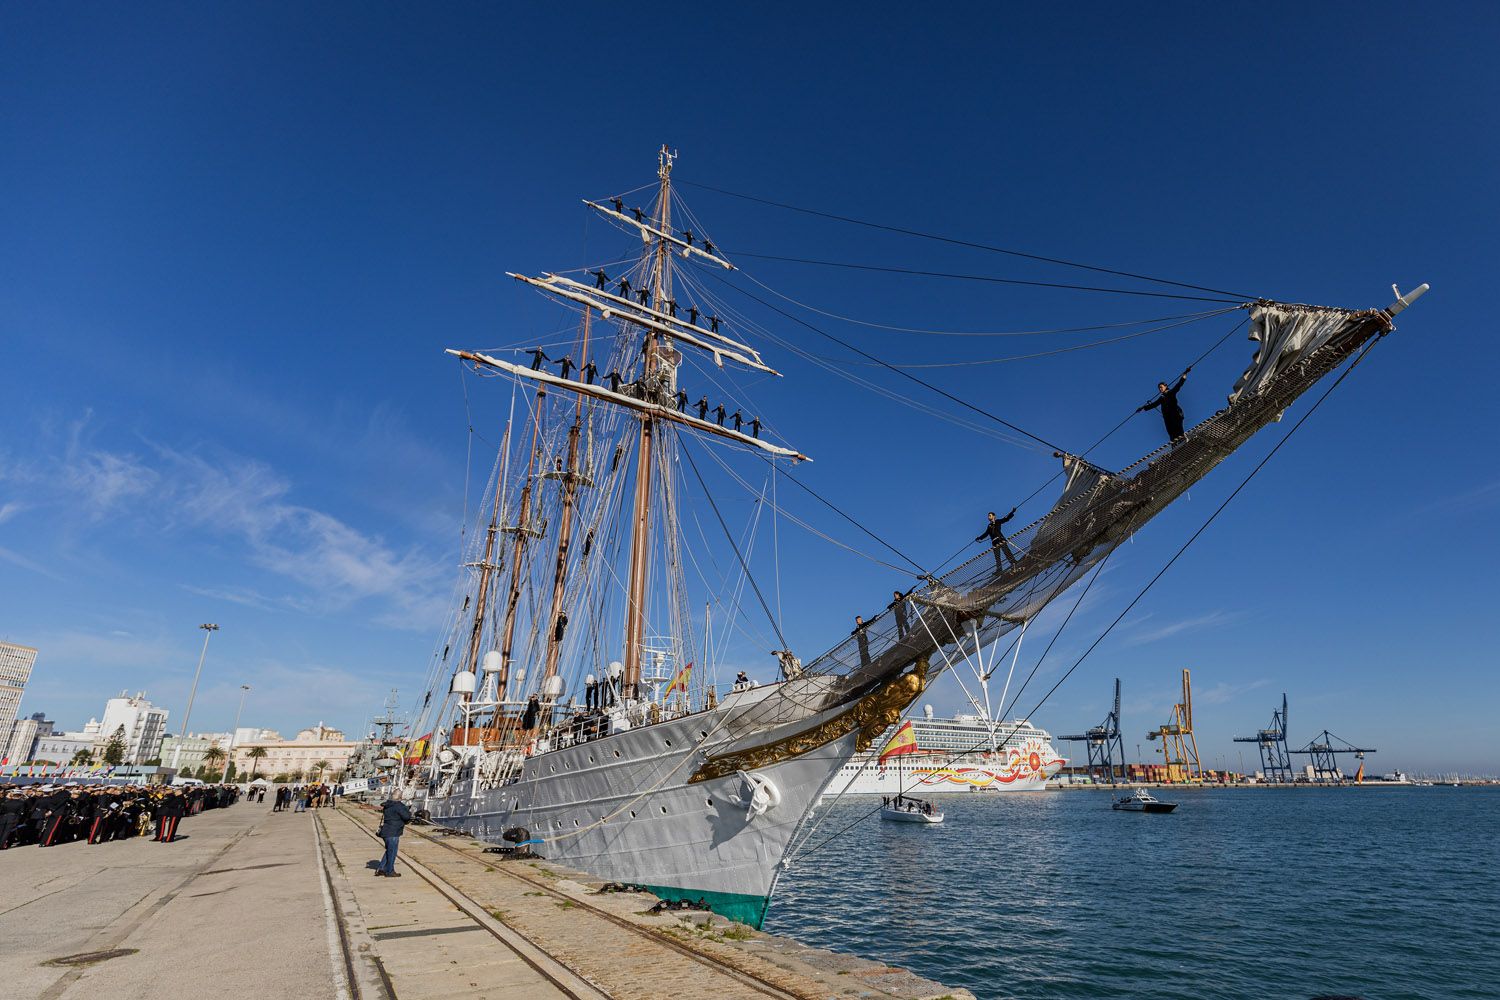 El buque escuela 'Juan Sebastián de Elcano' atracado en el puerto de Cádiz.